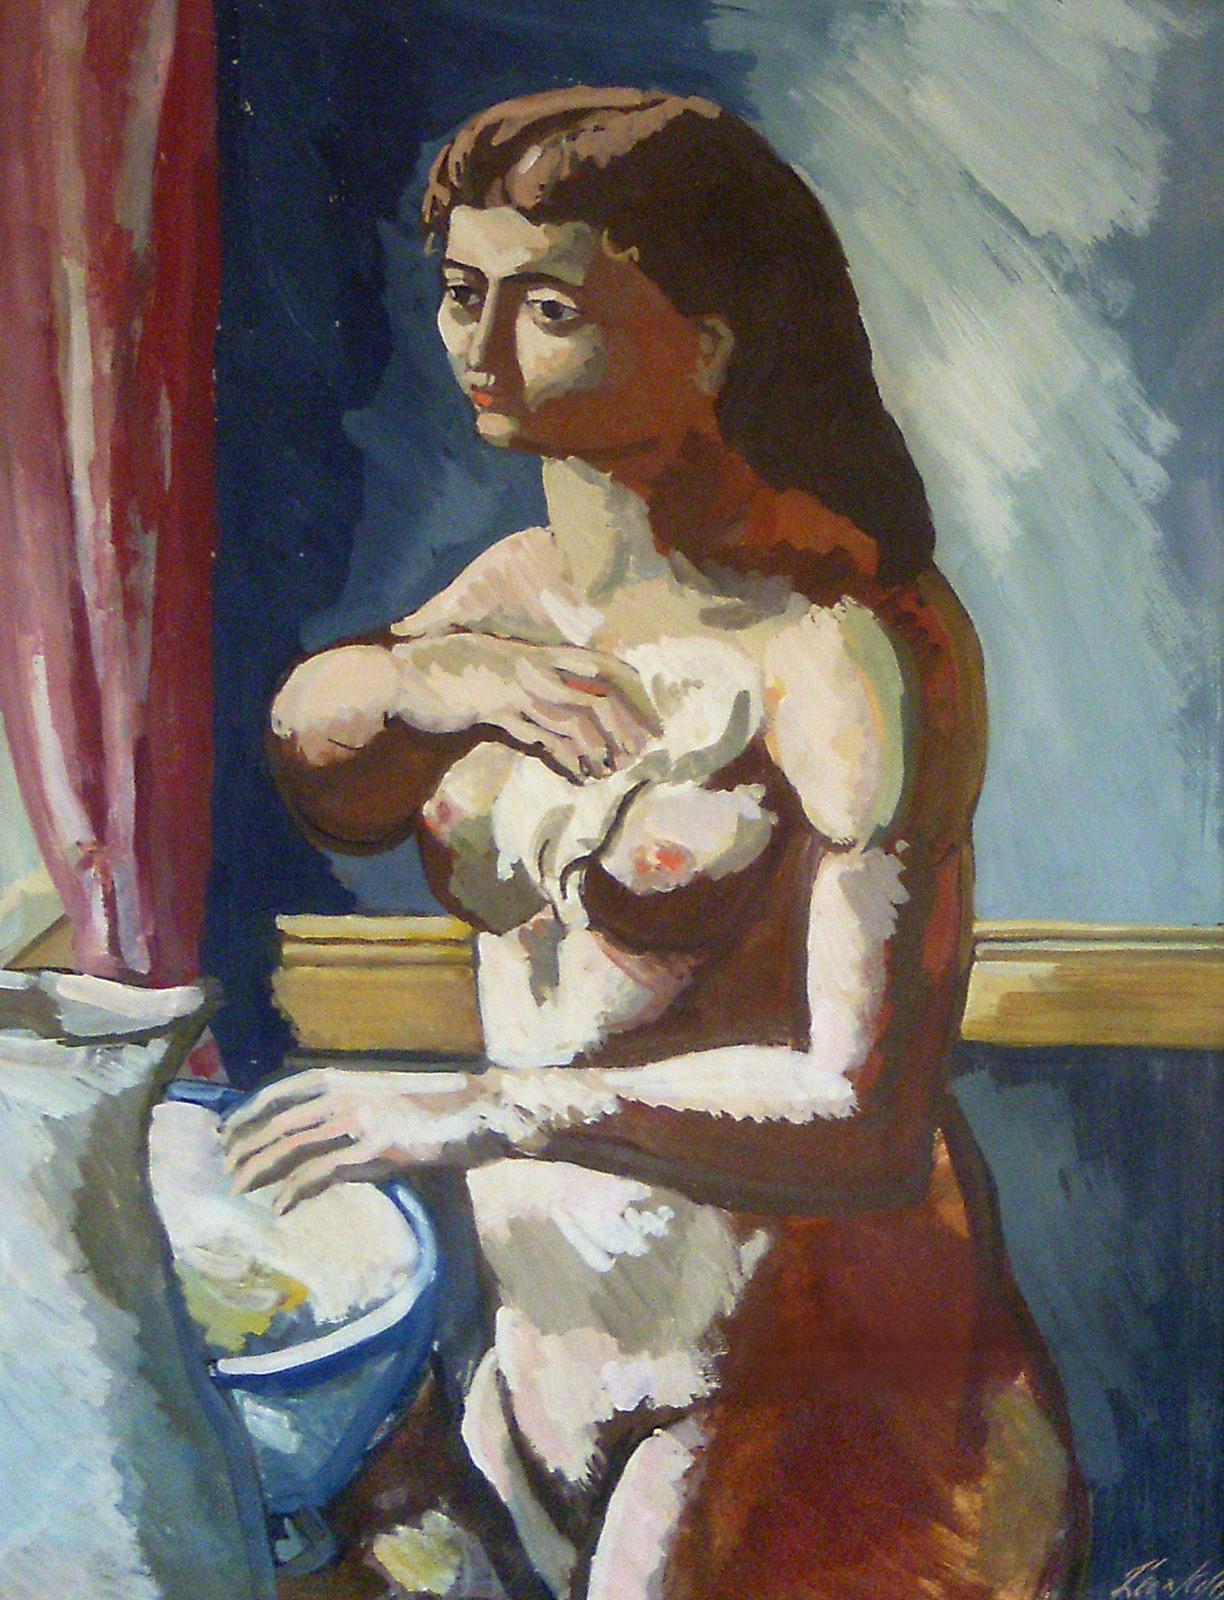 Woman at Basin, portrait d'une femme nue de style Picasso, moderniste américain